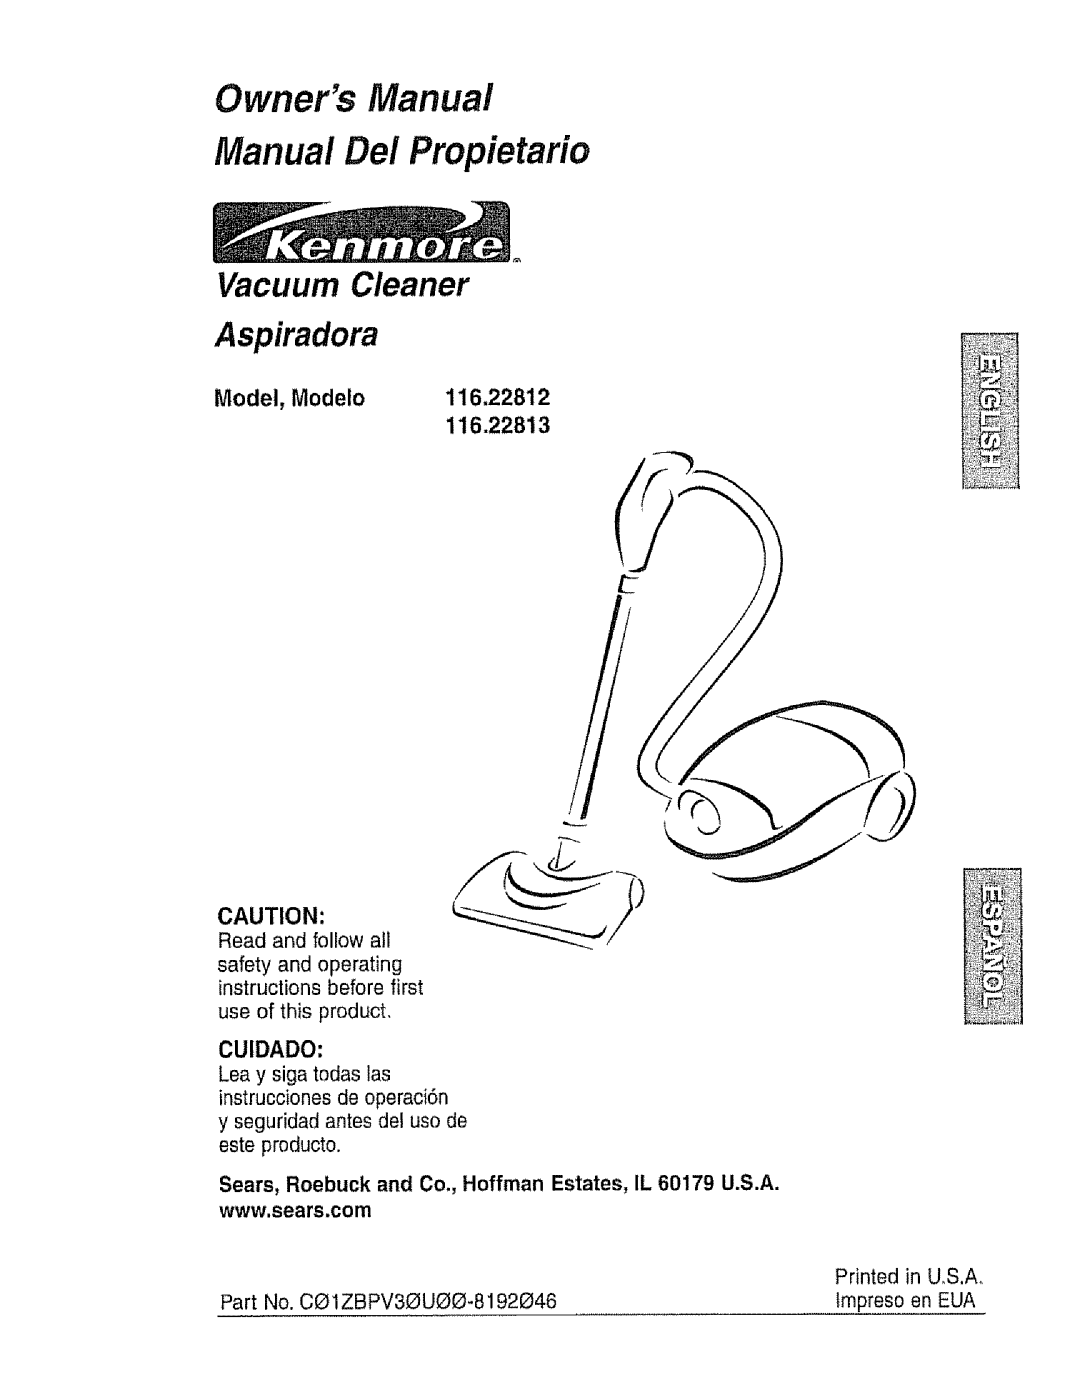 Kenmore 116.22812 owner manual Model, Modelo, Owners Manual Manual Del Propietario, Vacuum Cleaner Aspiradora, 116.22813 